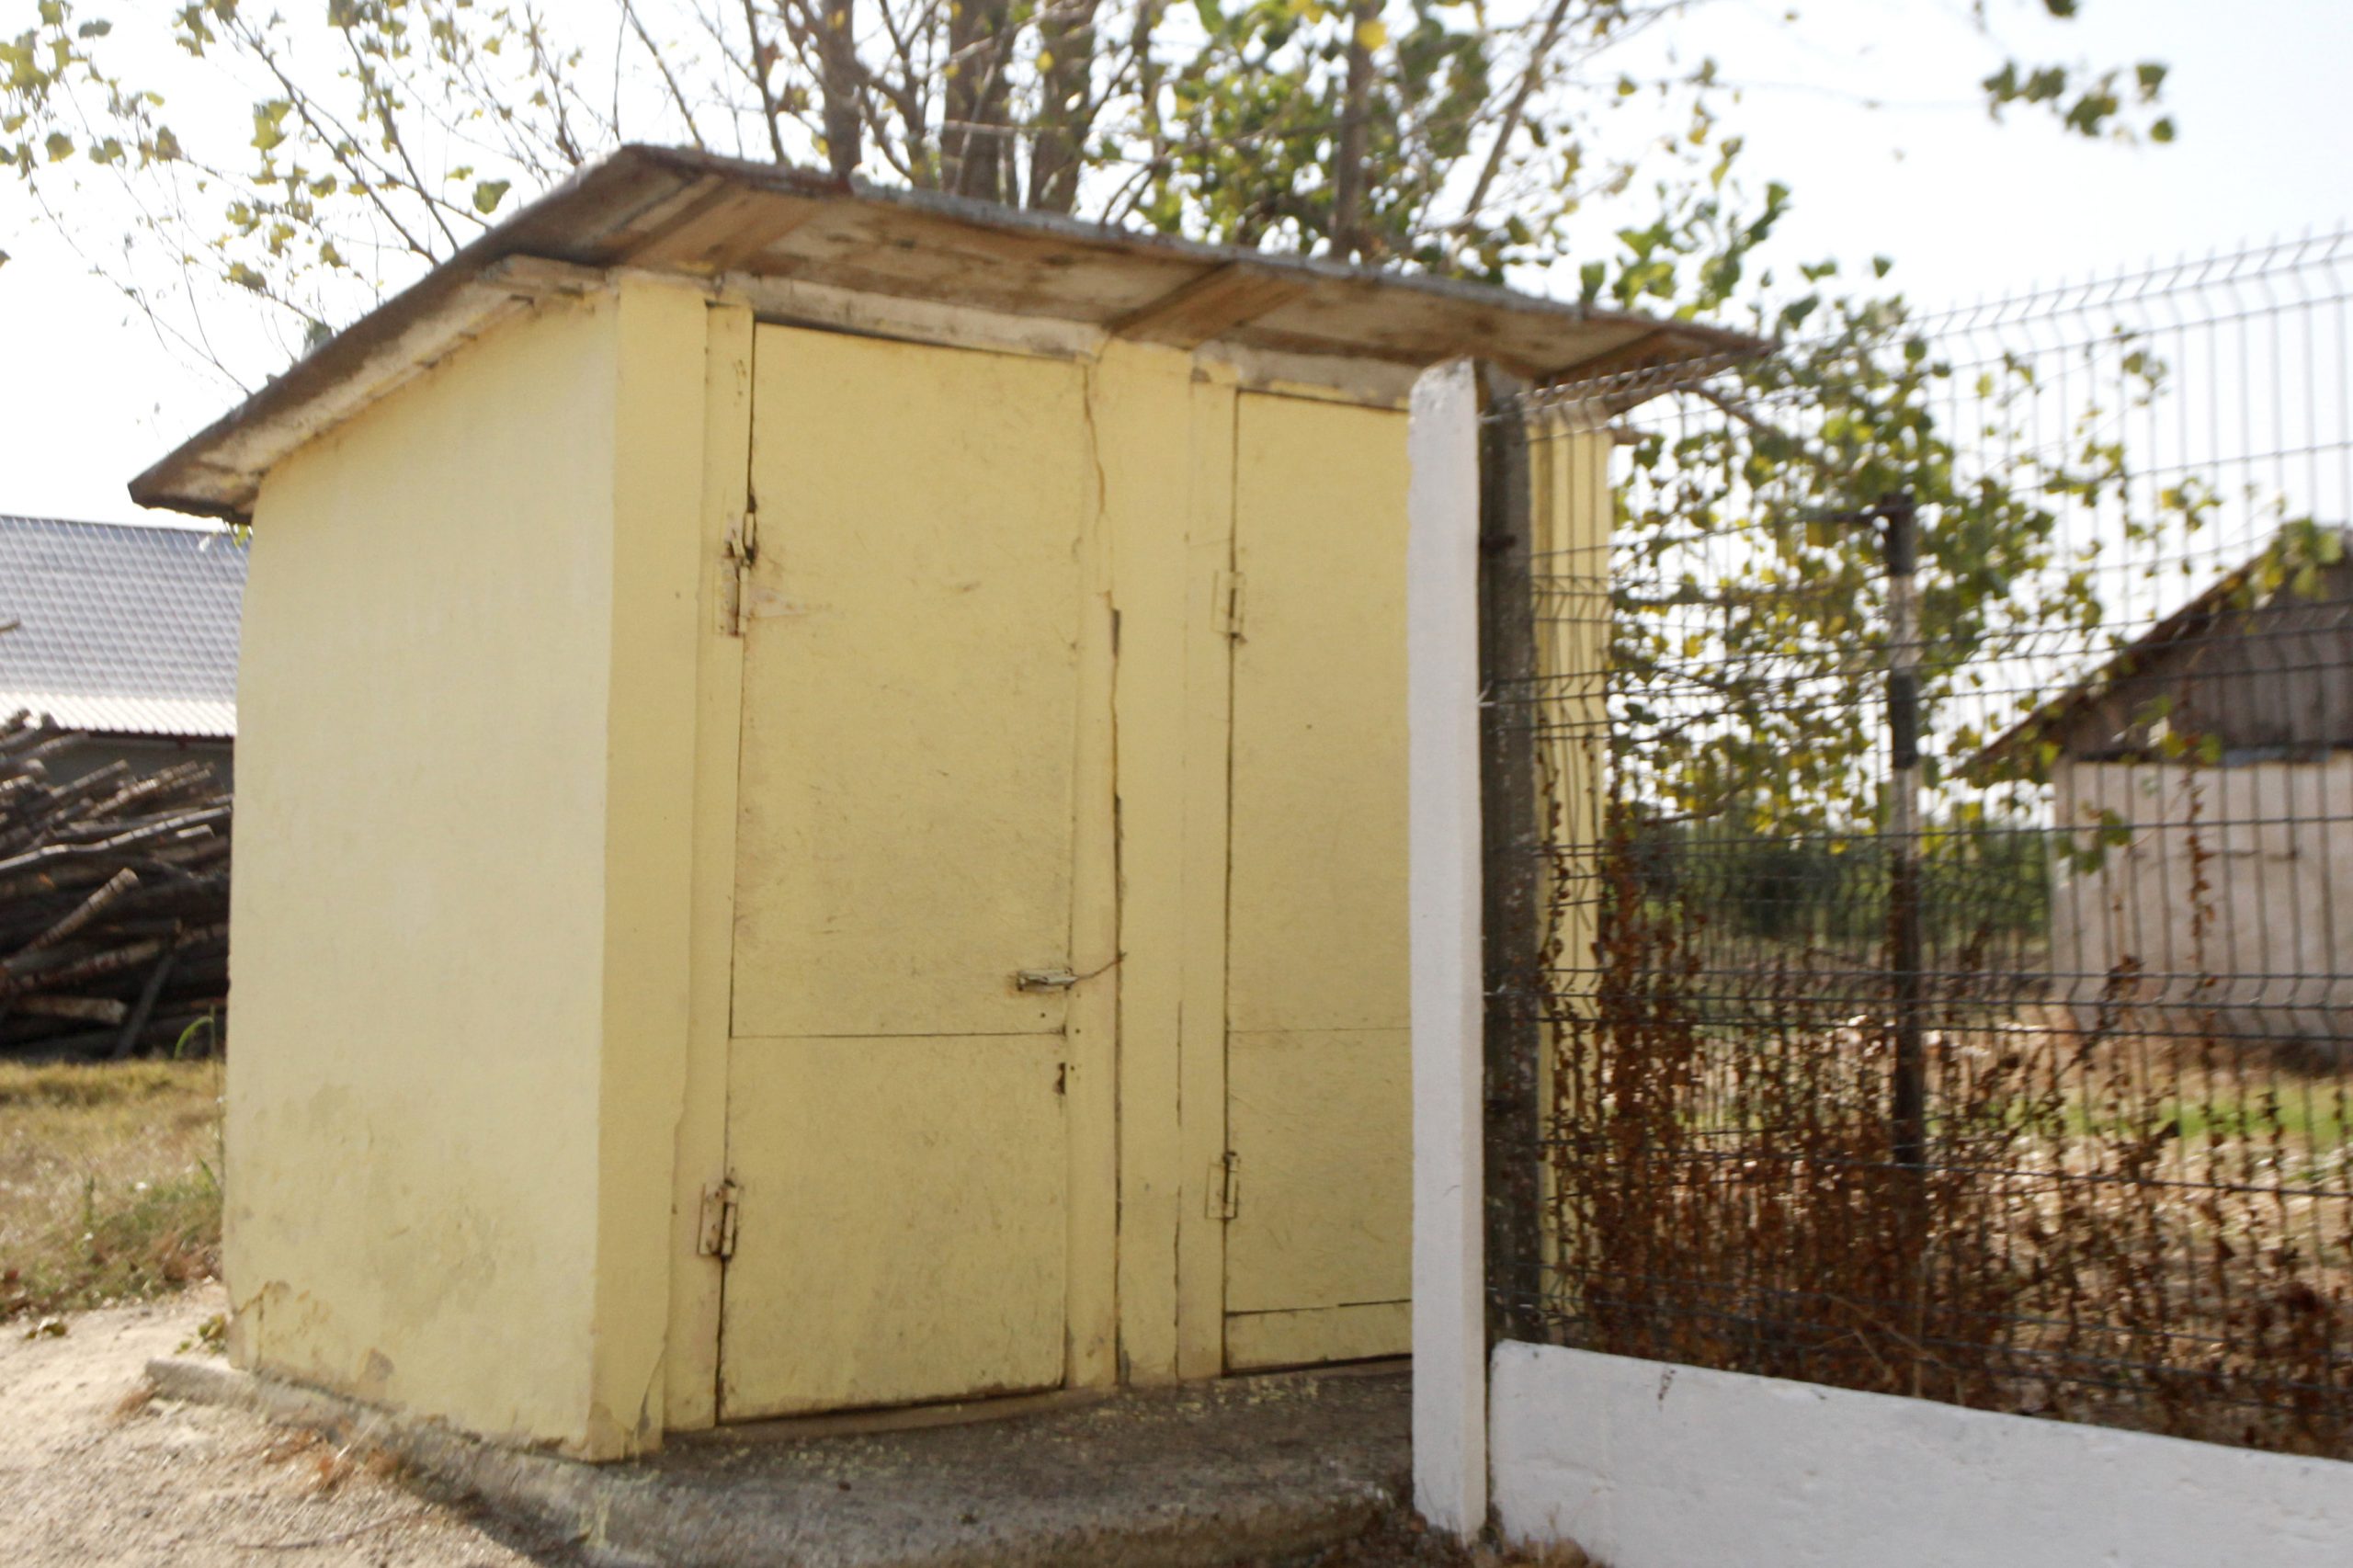 A început școala, dar aproape 200 de școli au WC în curte